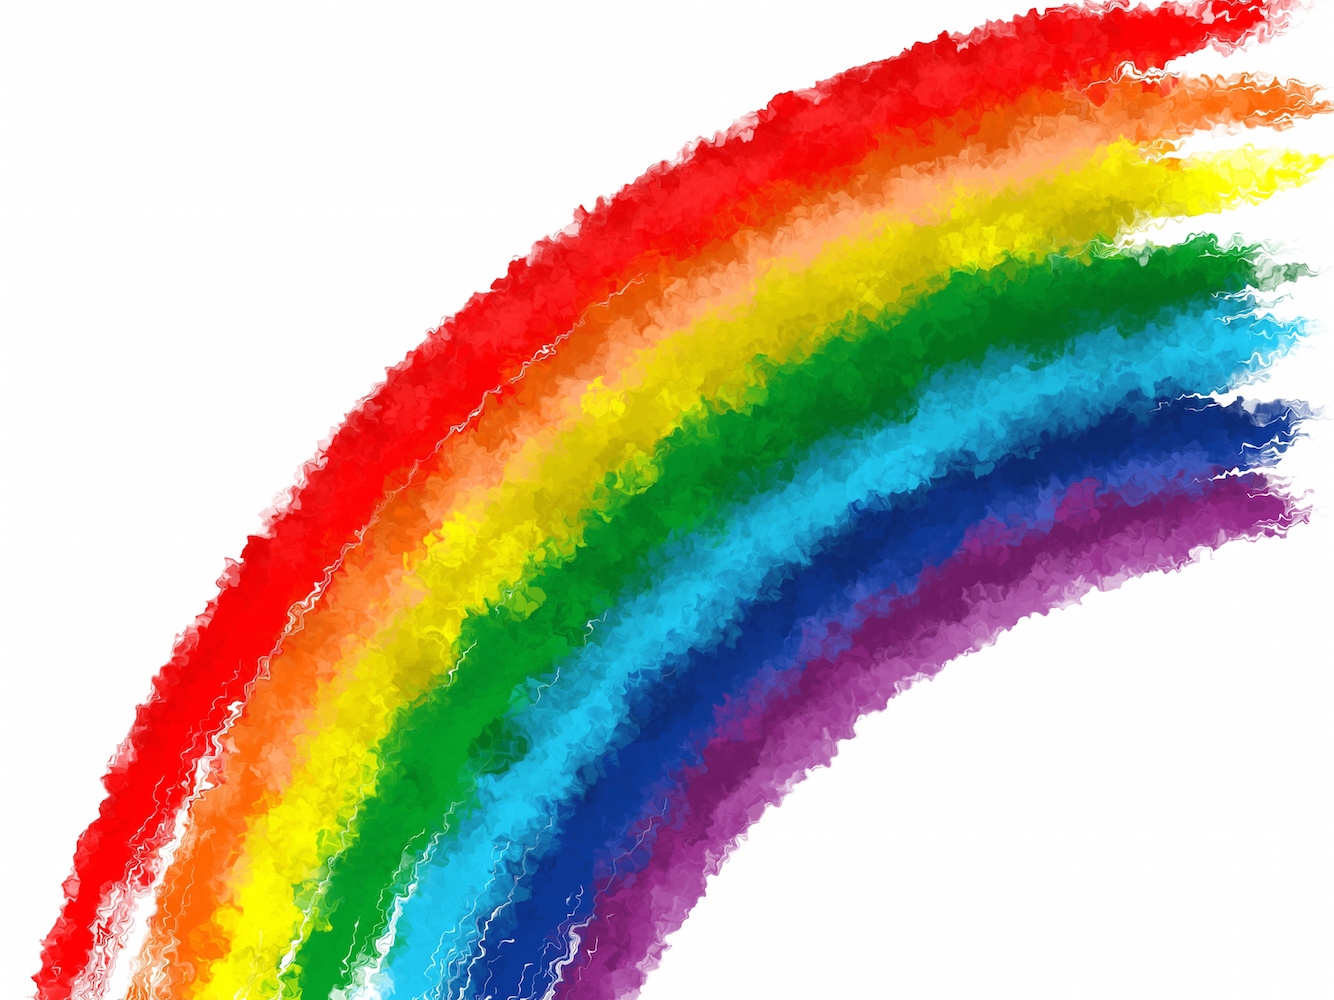 Цвета радуги по порядку фото цветными карандашами для детей 6 7